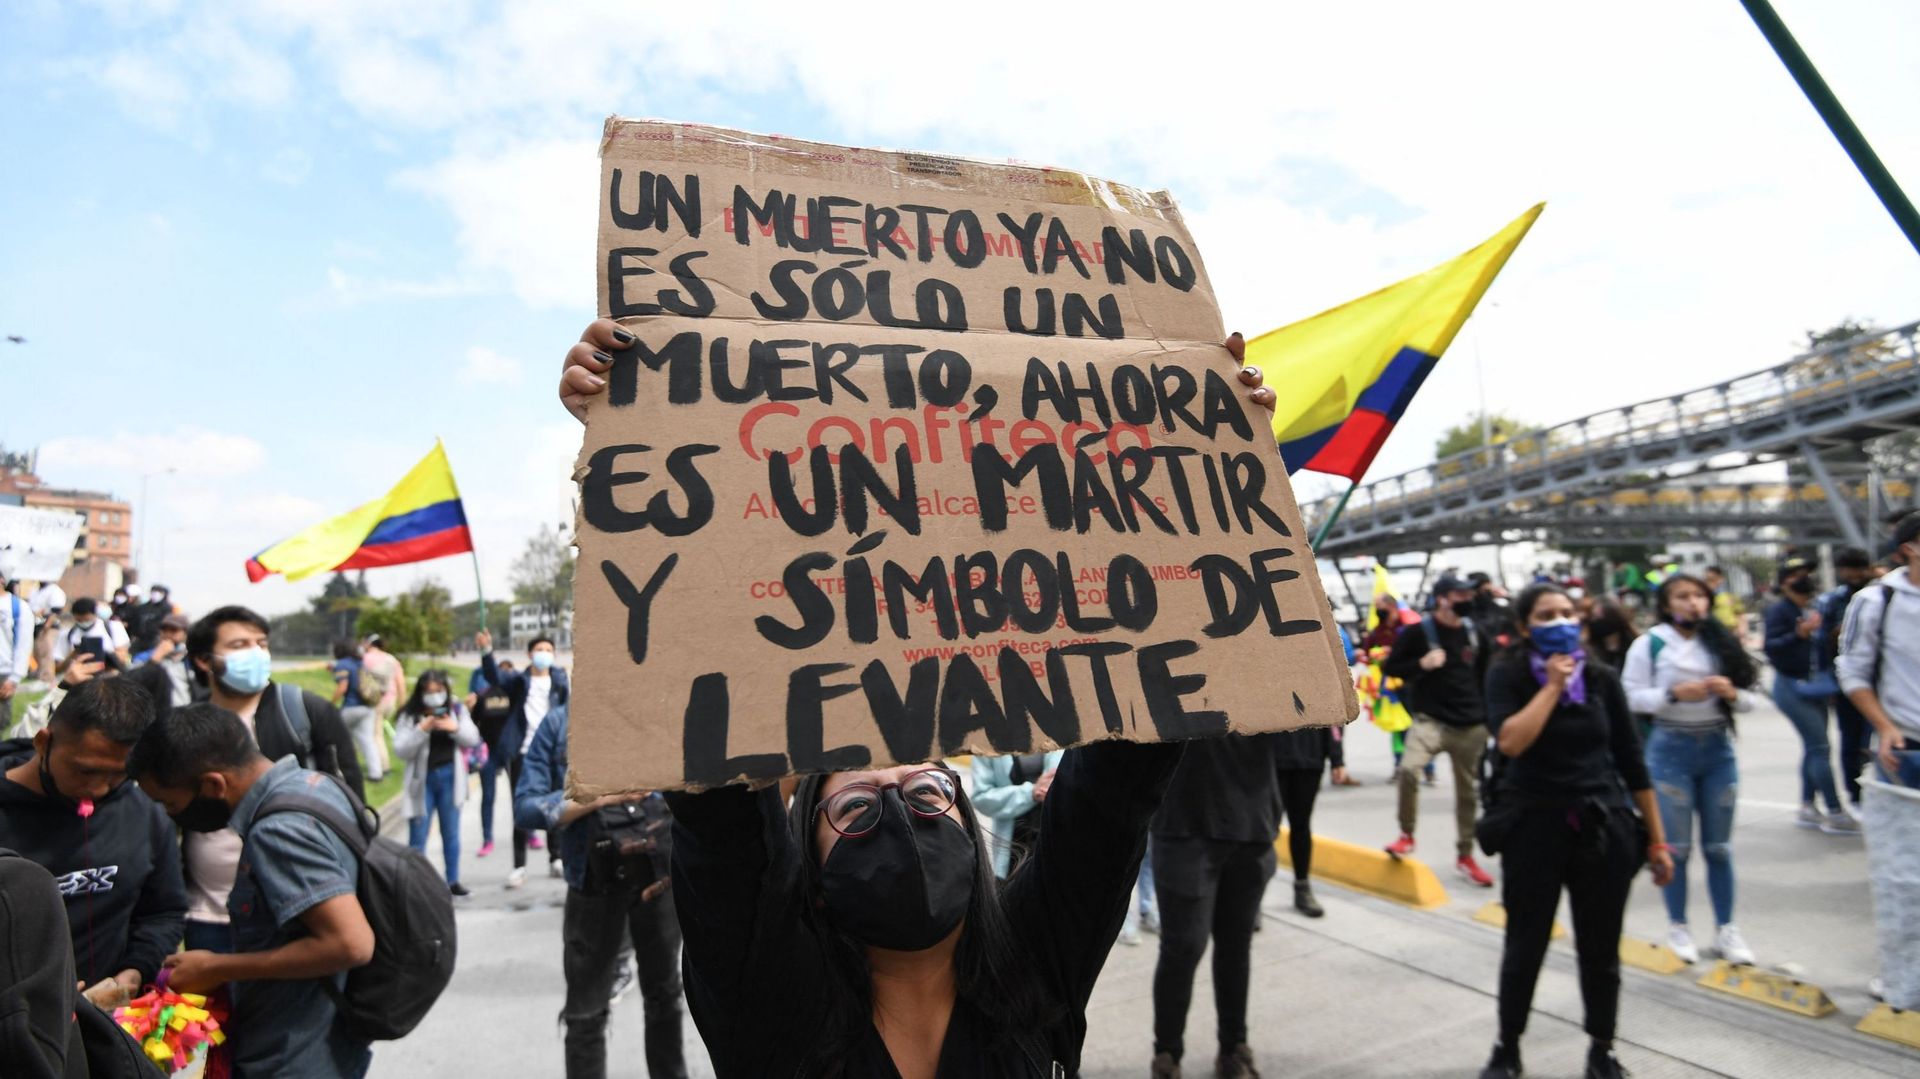 Une femme brandit une pancarte affirmant "Un homme  mort est un martyr et un symbole" lors d'une manifestation à Bogota le 28 avril 2021